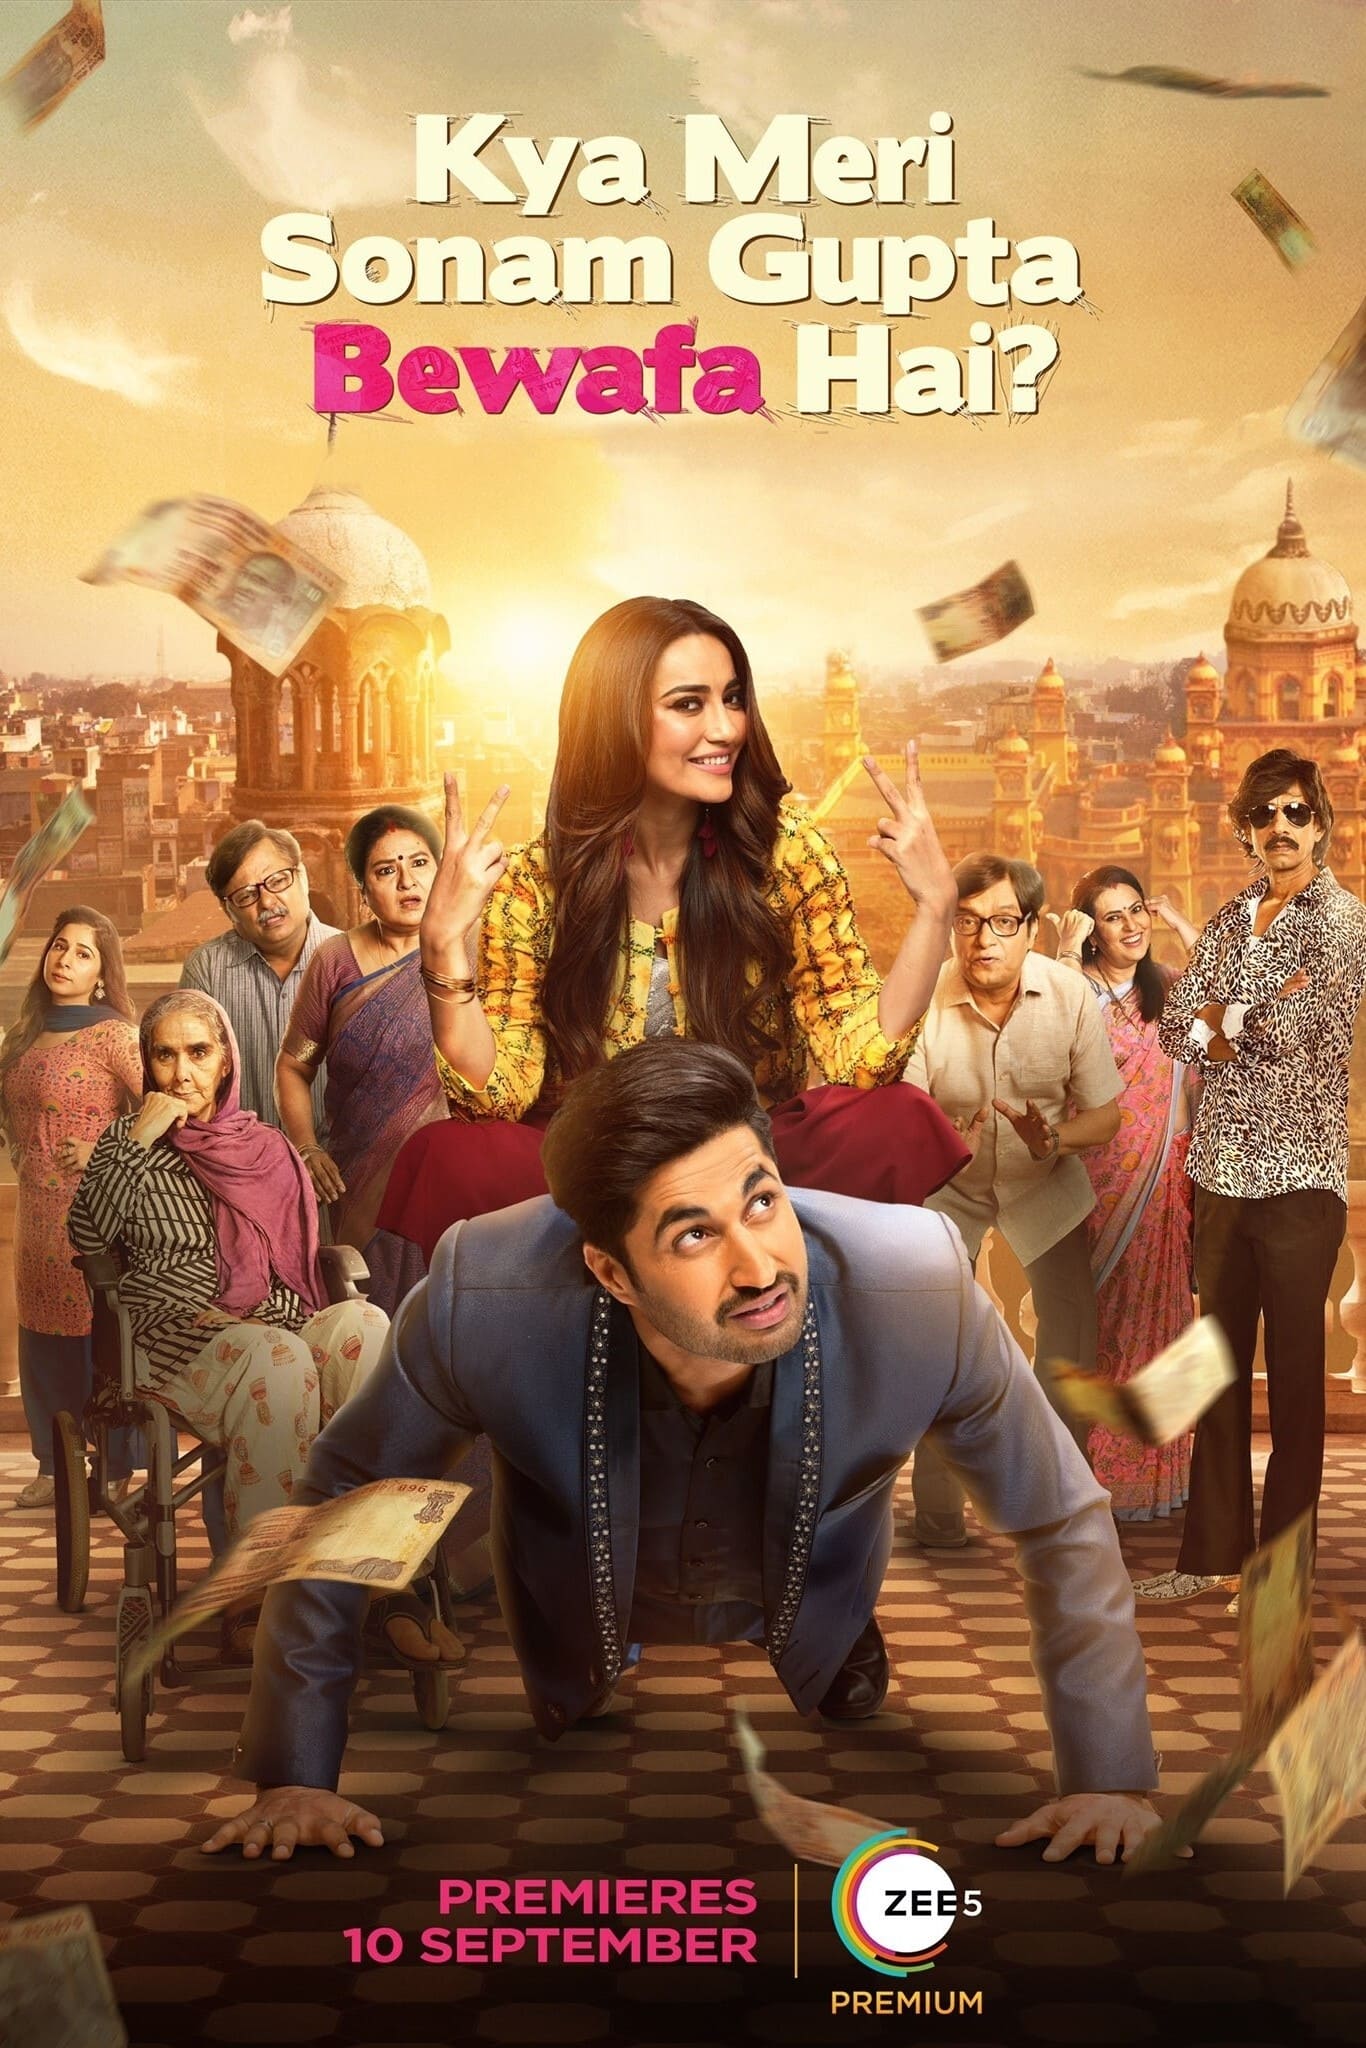 Poster for the movie "Kya Meri Sonam Gupta Bewafa Hai?"